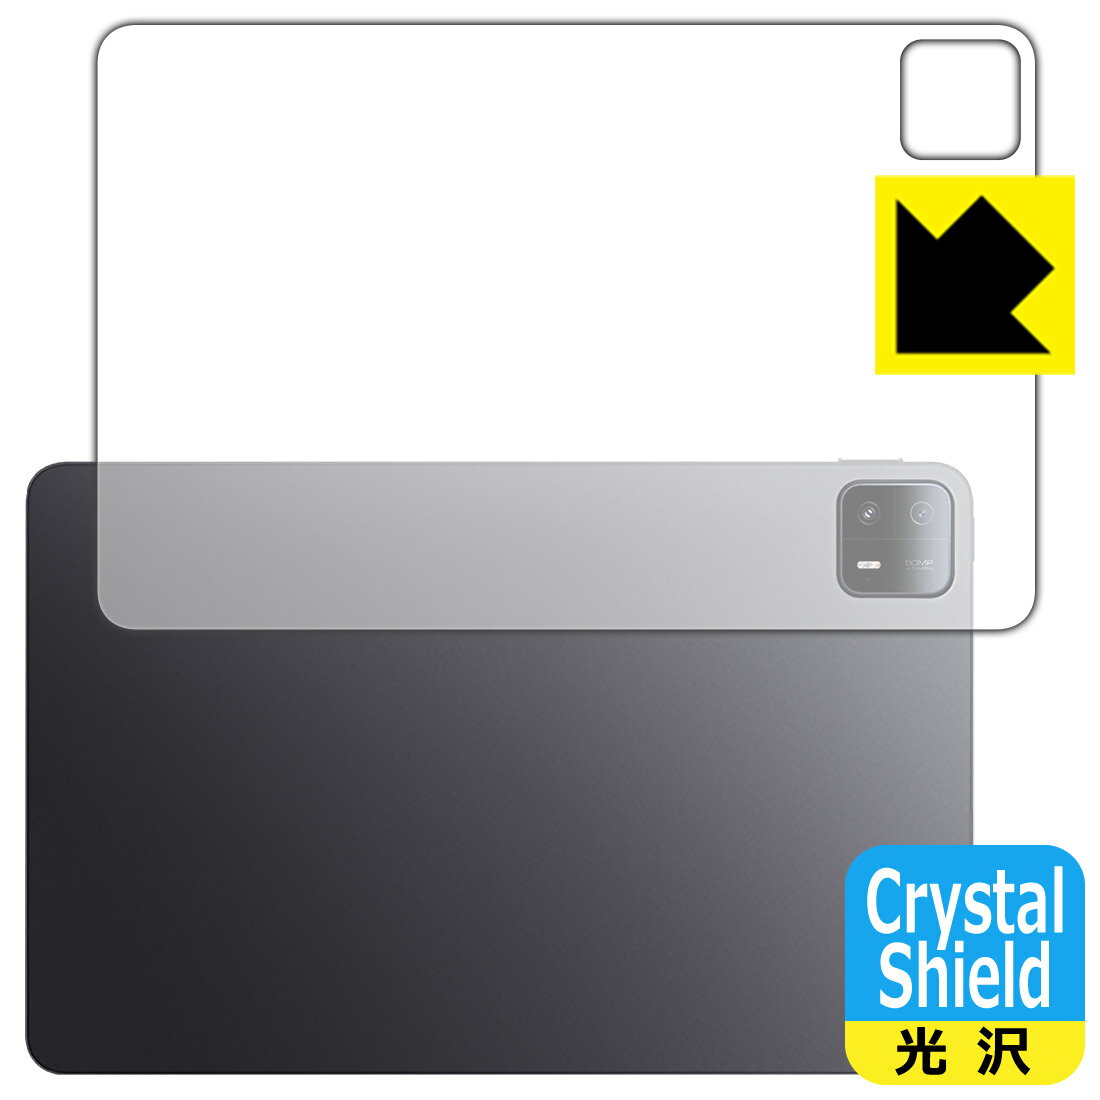 対応機種●対応機種 : Xiaomi Pad 6 Max 14専用の商品です。●製品内容 : 背面用フィルム3枚・クリーニングワイプ1個●「Crystal Shield」は高い透明度と光沢感で、保護フィルムを貼っていないかのようなクリア感のある『光沢タイプの保護フィルム』●安心の国産素材を使用。日本国内の自社工場で製造し出荷しています。 ★貼り付け失敗交換サービス対象商品★ 国内自社工場製造・発送だからできる 安心の製品保証とサポート ■製品保証 お届けした製品が誤っていたり、不具合があった場合などには、お届けから1ヶ月以内にメールにてお問い合わせください。交換等対応させていただきます。[キャンセル・返品（返金・交換）について] ■■貼り付け失敗時の交換サービス■■貼り付けに失敗しても1回だけ無償交換ができます。(失敗したフィルムをお送りいただき、新品に無償交換します。往復の送料のみお客様にご負担をお願いいたします。詳しくは製品に同封の紙をご確認ください) ■■保護フィルム貼り付け代行サービス■■保護フィルムの貼り付け作業に自信がない方には、PDA工房で貼り付け作業を代行いたします。(PDA工房の保護フィルムのみが対象です。詳しくは製品に同封の紙をご確認ください) Crystal Shield【光沢】保護フィルム 素材説明 ■高級感あふれる光沢と画質を損なわない透明度！貼っていることを意識させないほどの高い透明度に、高級感あふれる光沢・クリアな仕上げとなります。動画視聴や画像編集など、機器本来の発色を重視したい方におすすめです。■ハードコートでスリキズを防ぎ、フッ素加工で汚れもつきにくい！ハードコート加工がされており、キズや擦れに強くなっています。簡単にキズがつかず長くご利用いただけます。表面はフッ素コーティングがされており、皮脂や汚れがつきにくく、また、落ちやすくなっています。指滑りもなめらかで、快適な使用感です。■気泡の入りにくい特殊な自己吸着タイプ接着面は気泡の入りにくい特殊な自己吸着タイプです。素材に柔軟性があり、貼り付け作業も簡単にできます。また、はがすときにガラス製フィルムのように割れてしまうことはありません。貼り直しが何度でもできるので、正しい位置へ貼り付けられるまでやり直すことができます。■抗菌加工で清潔抗菌加工によりフィルム表面の菌の繁殖を抑えることができます。清潔な画面を保ちたい方におすすめです。※抗菌率99.9％ / JIS Z2801 抗菌性試験方法による評価■安心の日本製最高級グレードの国産素材を日本国内の弊社工場で加工している完全な Made in Japan です。安心の品質をお届けします。 【ポスト投函送料無料】商品は【ポスト投函発送 (追跡可能メール便)】で発送します。お急ぎ、配達日時を指定されたい方は以下のクーポンを同時購入ください。【お急ぎ便クーポン】　プラス110円(税込)で速達扱いでの発送。お届けはポストへの投函となります。【配達日時指定クーポン】　プラス550円(税込)で配達日時を指定し、宅配便で発送させていただきます。【お急ぎ便クーポン】はこちらをクリック【配達日時指定クーポン】はこちらをクリック